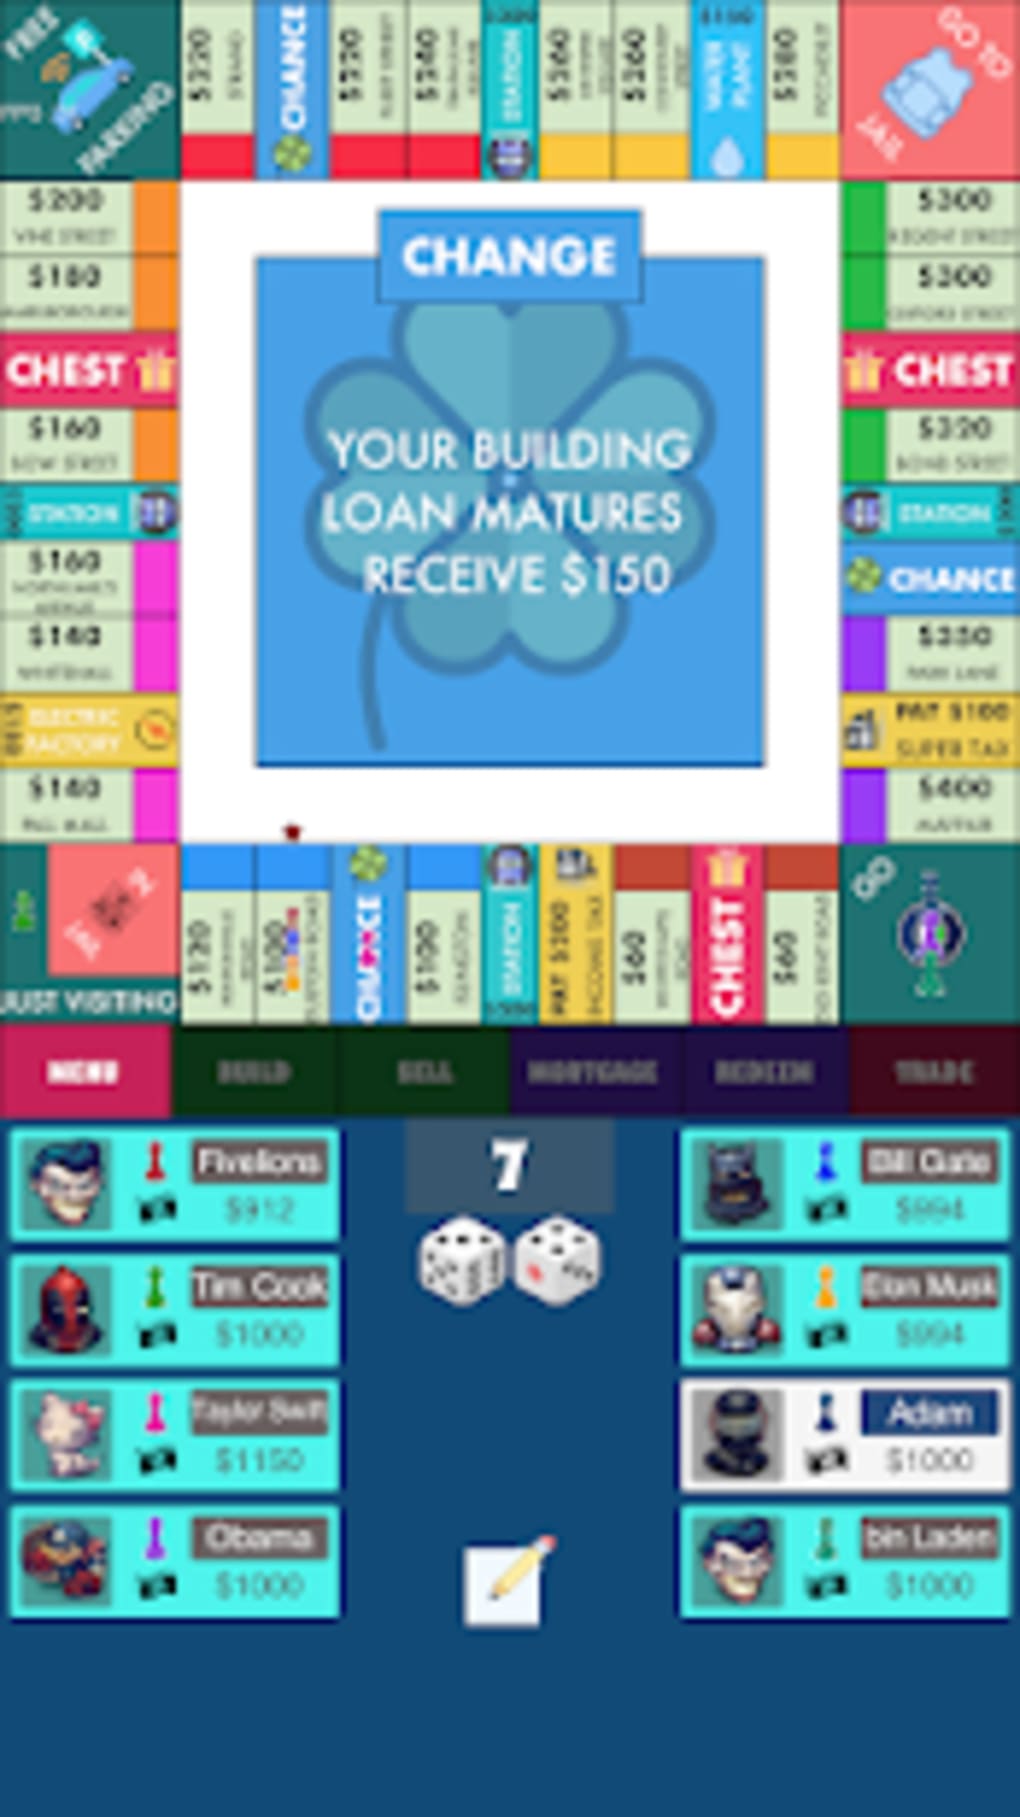 monopoly online app